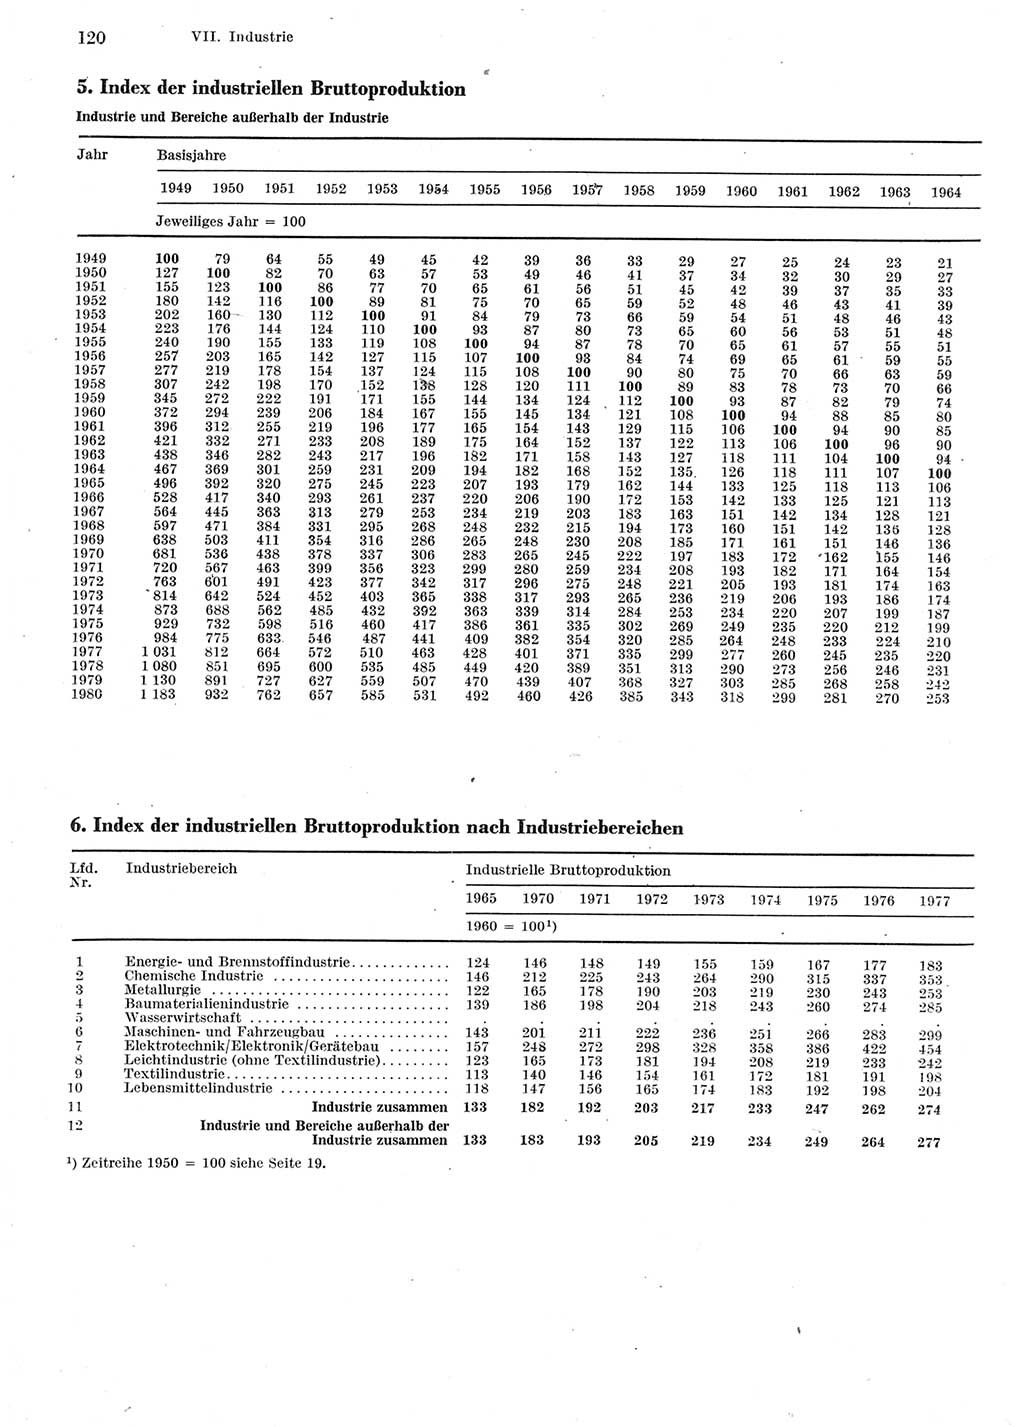 Statistisches Jahrbuch der Deutschen Demokratischen Republik (DDR) 1981, Seite 120 (Stat. Jb. DDR 1981, S. 120)